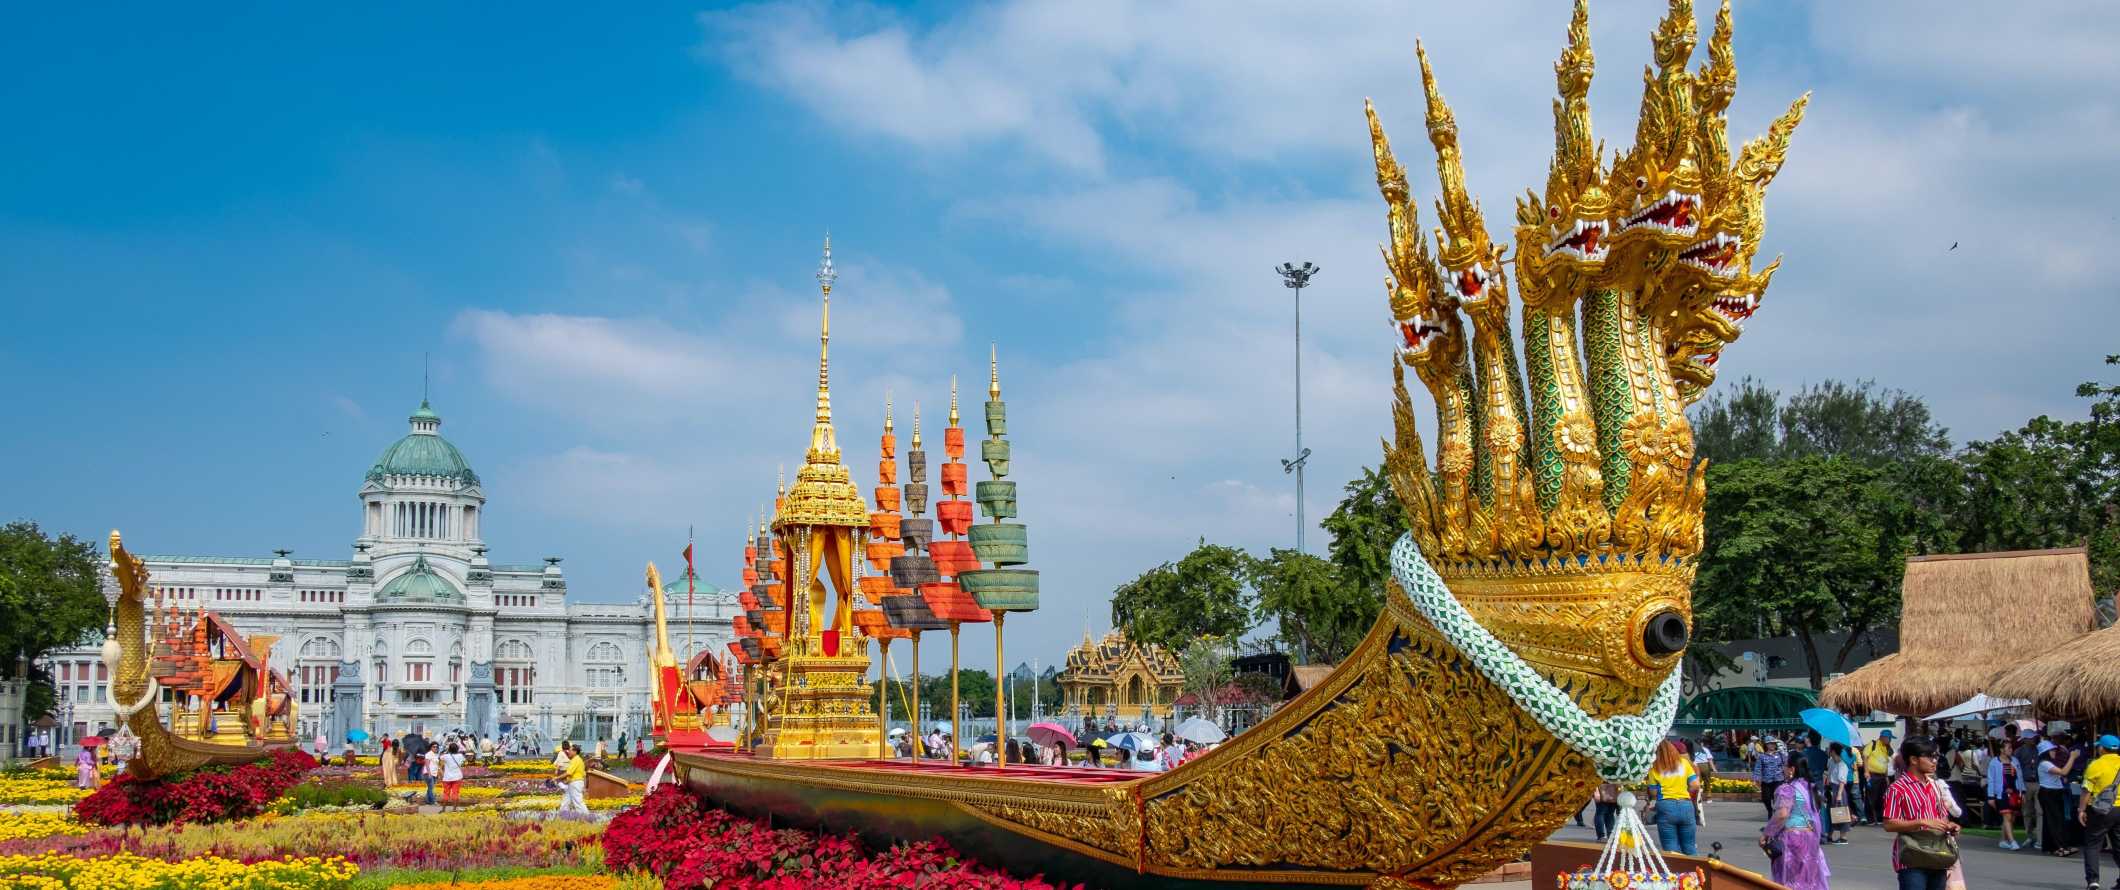 Uma grande barcaça de ouro longa com muitas cabeças de dragões fica em um canteiro de flores brilhantes em frente ao Museu Royal Barge em Bangkok, Tailândia